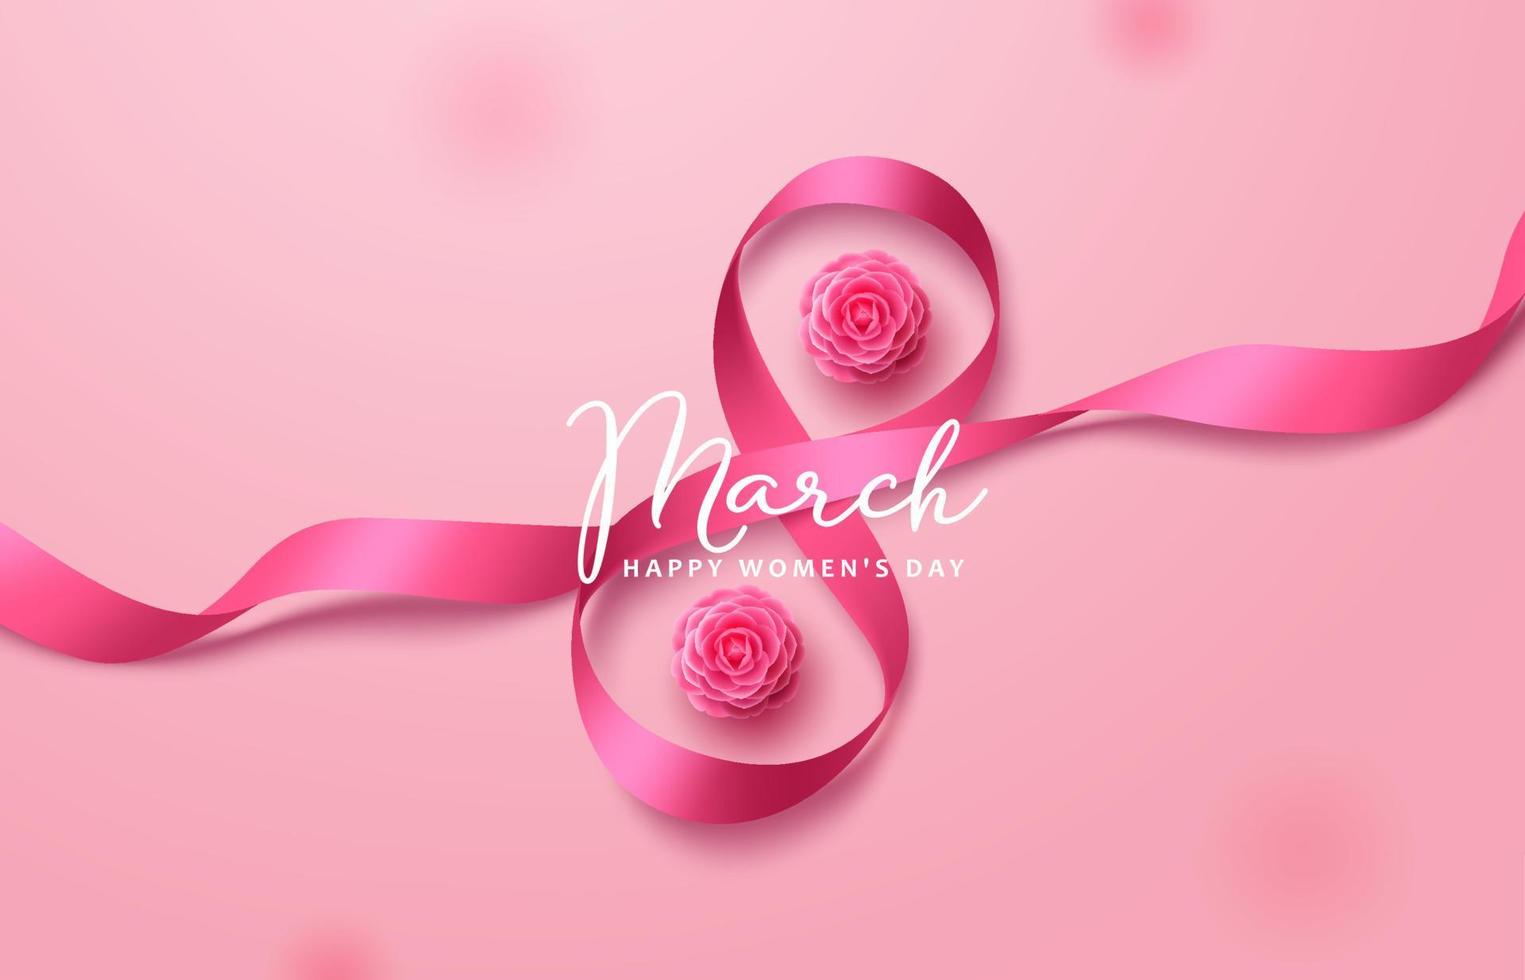 conception de fond de vecteur du 8 mars. texte de voeux de la journée de la femme avec le 8 mars en ruban rose et éléments de fleur de camélia pour la célébration internationale des femmes. illustration vectorielle.